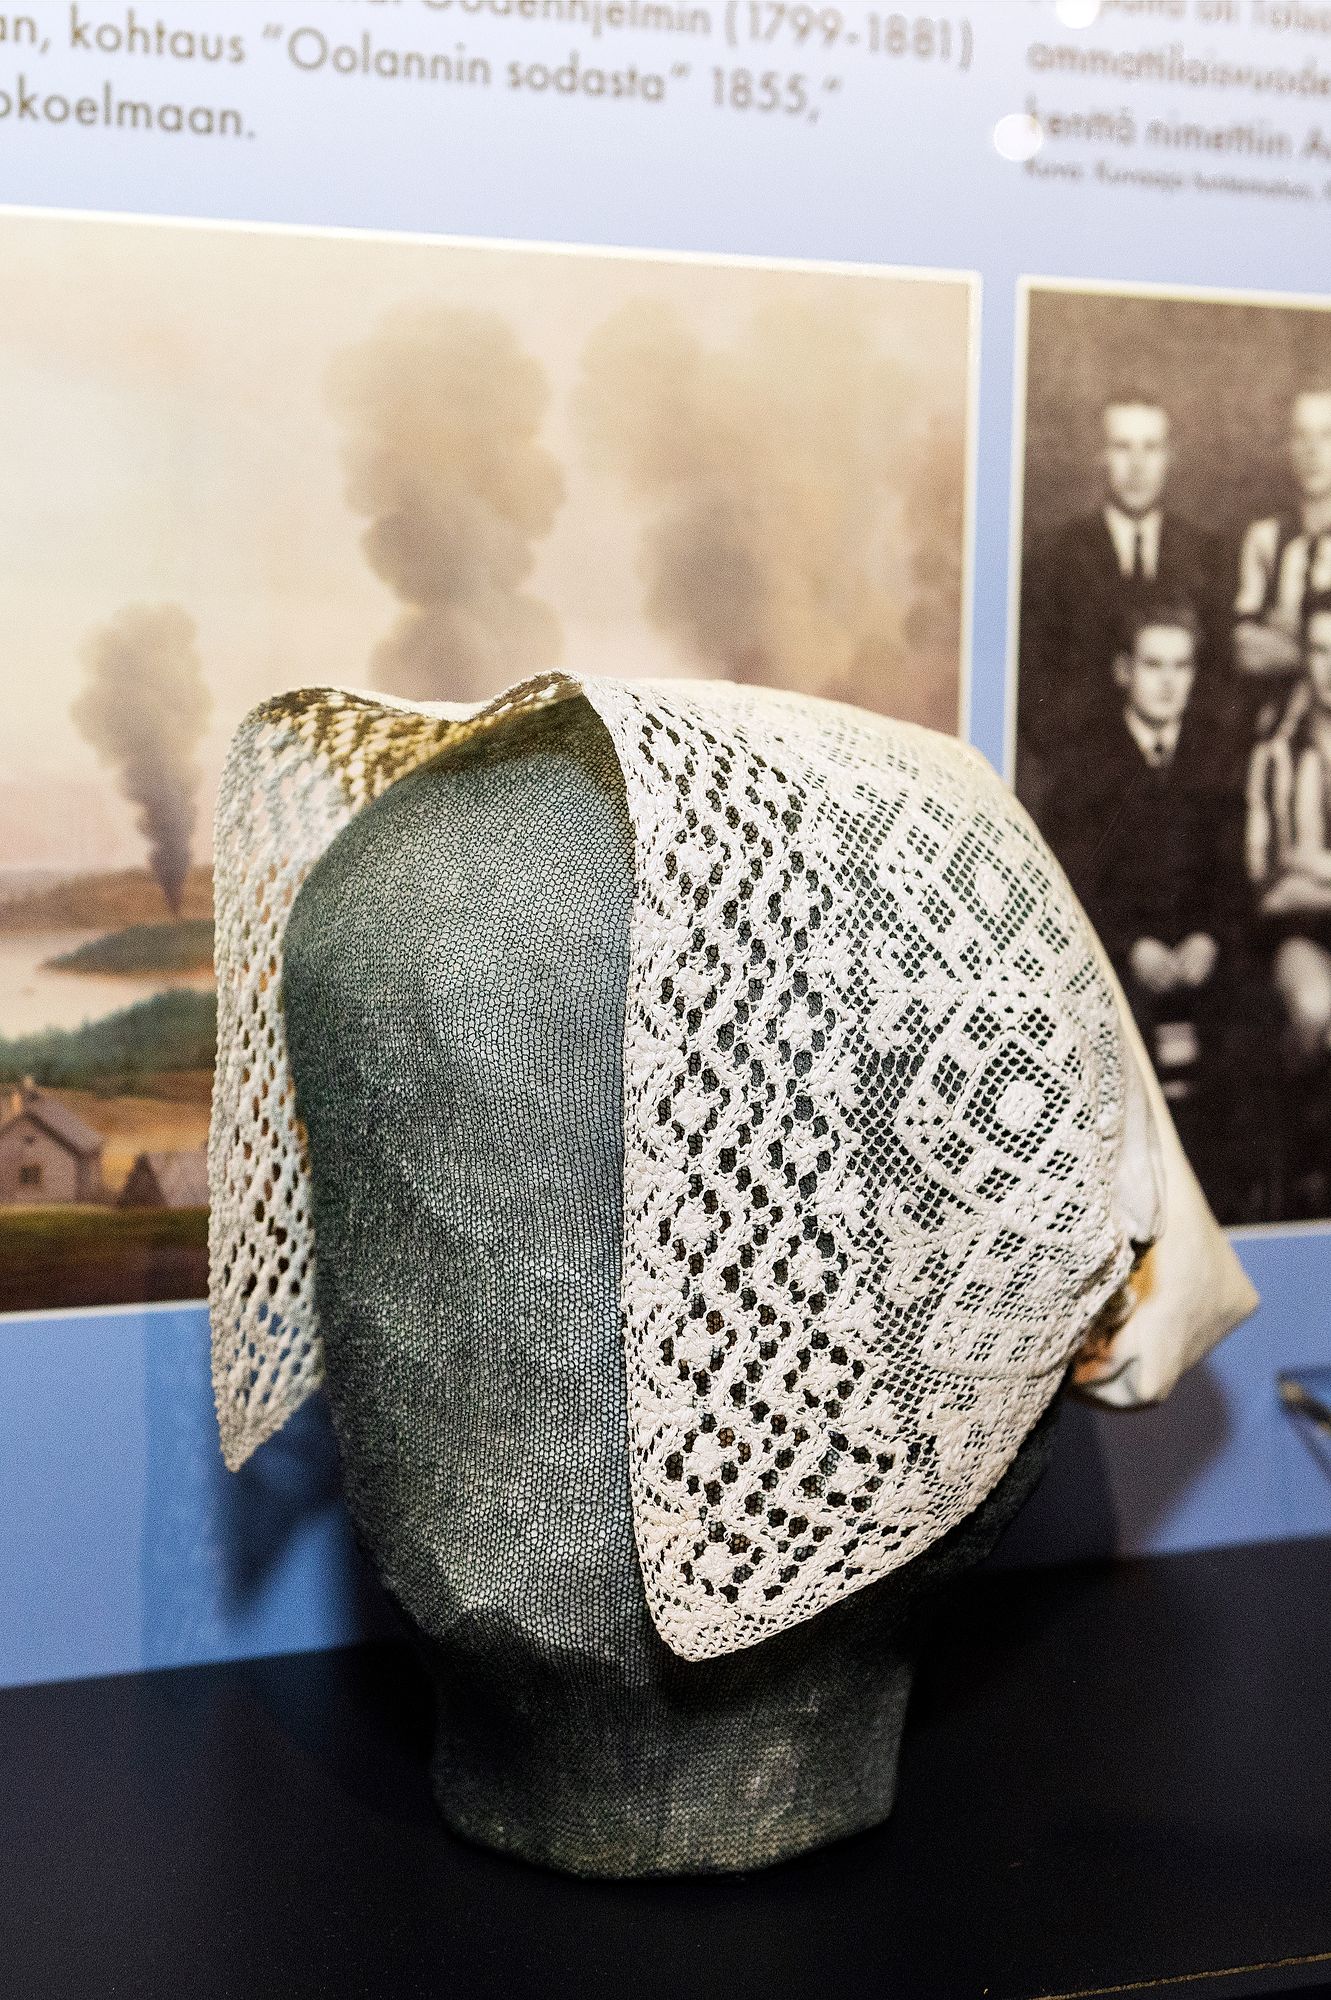 Kymenlaakson museon kokoelmissa oleva verkkopitsistä kudottu päähine eli tanu oli oman aikansa statussymboli. © Linda Varoma